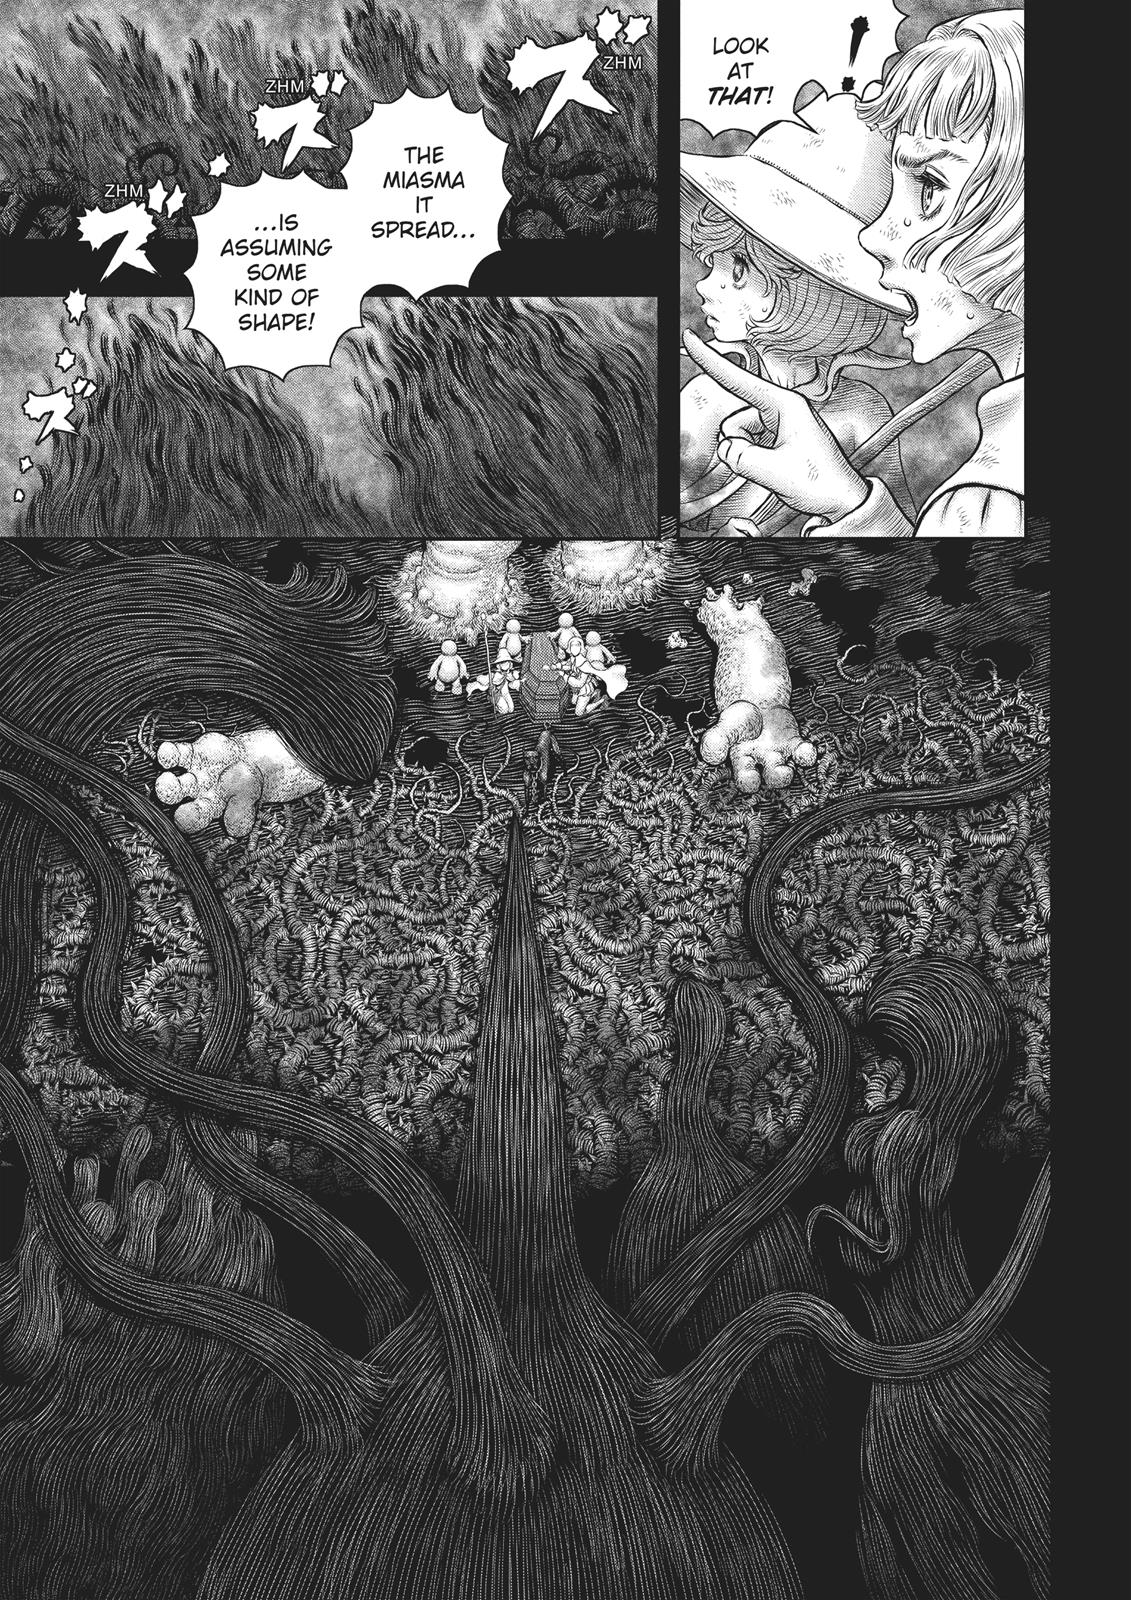 Berserk Manga Chapter 352 image 06